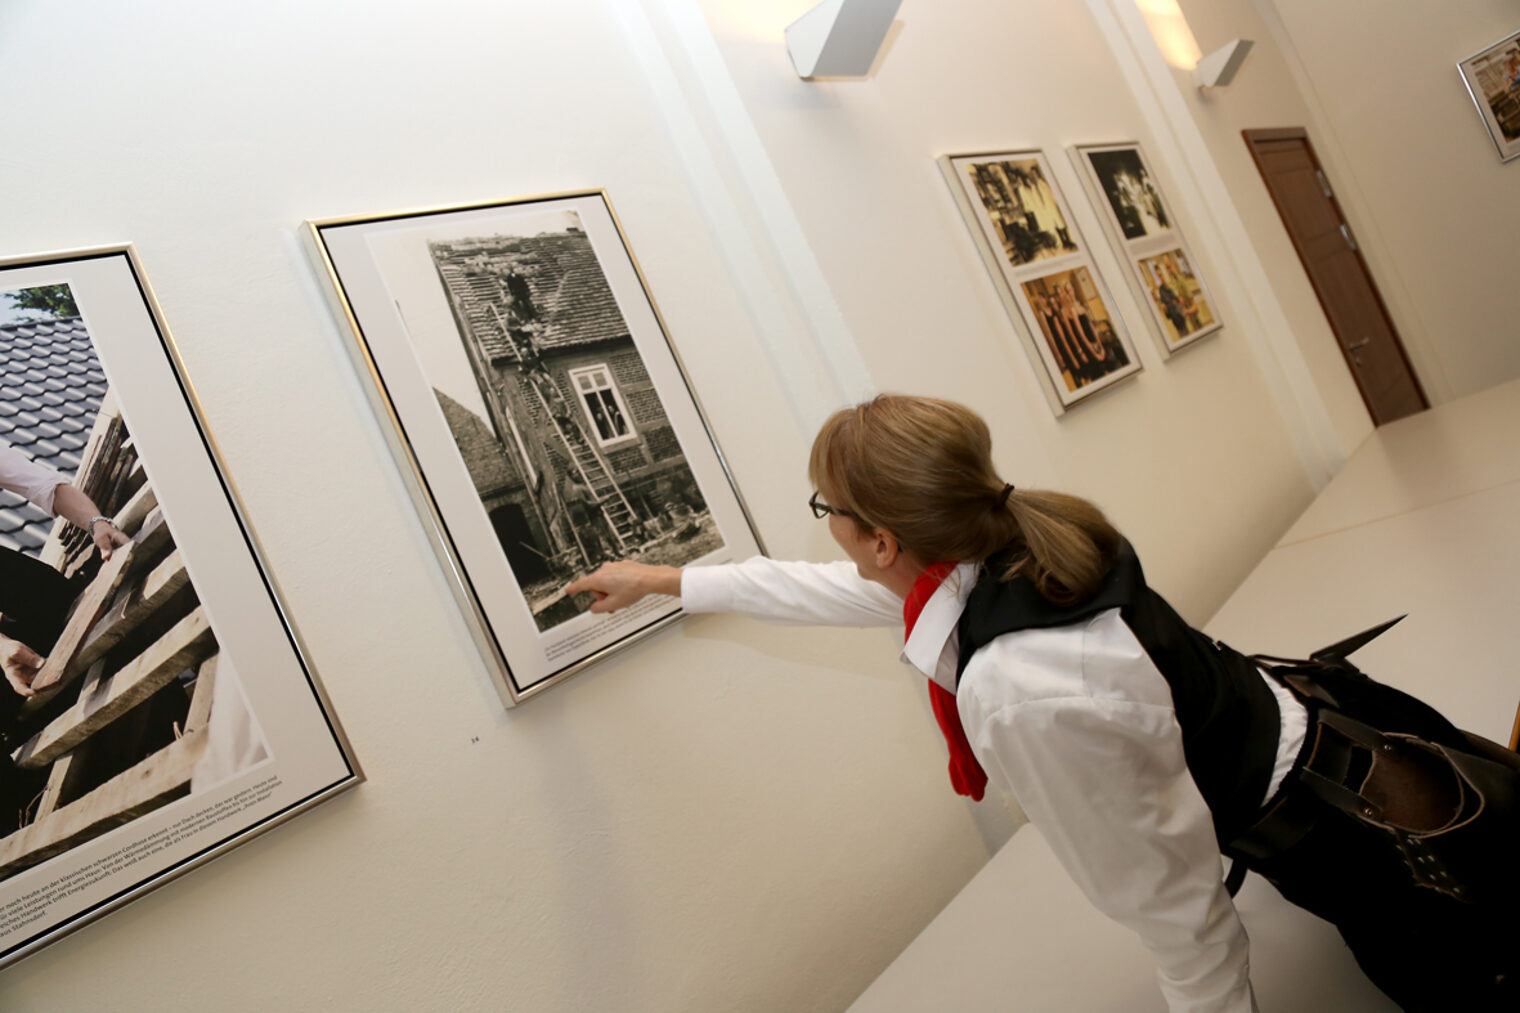 "Handwerk zwischen Tradition und Innovation" Ausstellung der Handwerkskammer Potsdam mit Werken des Potsdamer Fotografen Michael Lüder